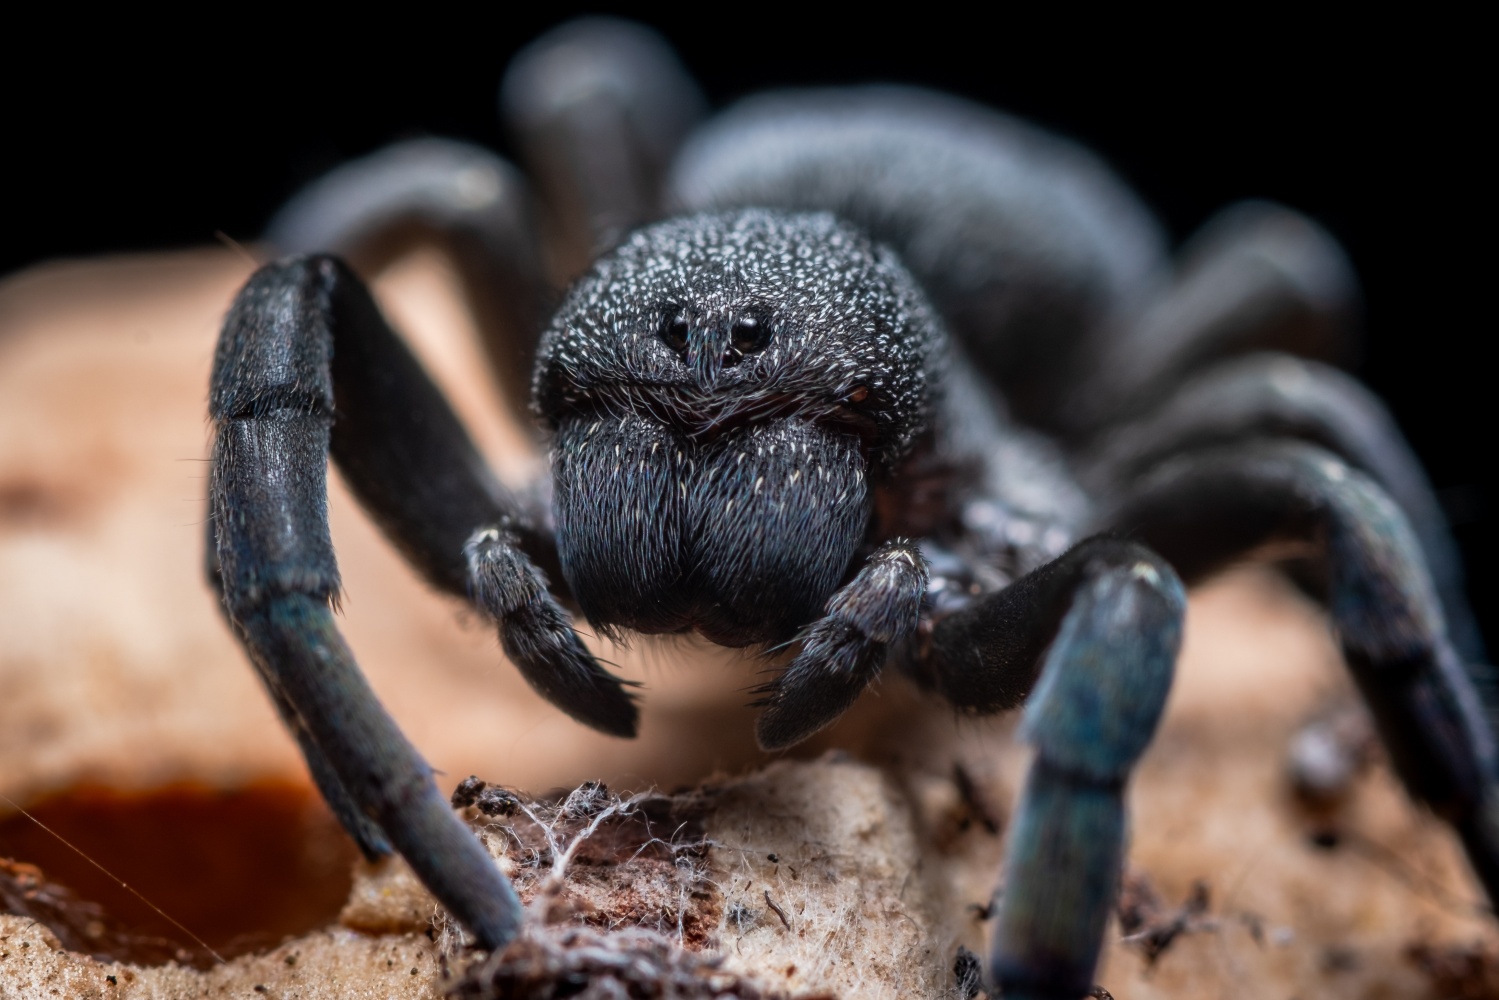 Pine Rockland Trapdoor Spider: Venomous Creature Found at Miami Zoo